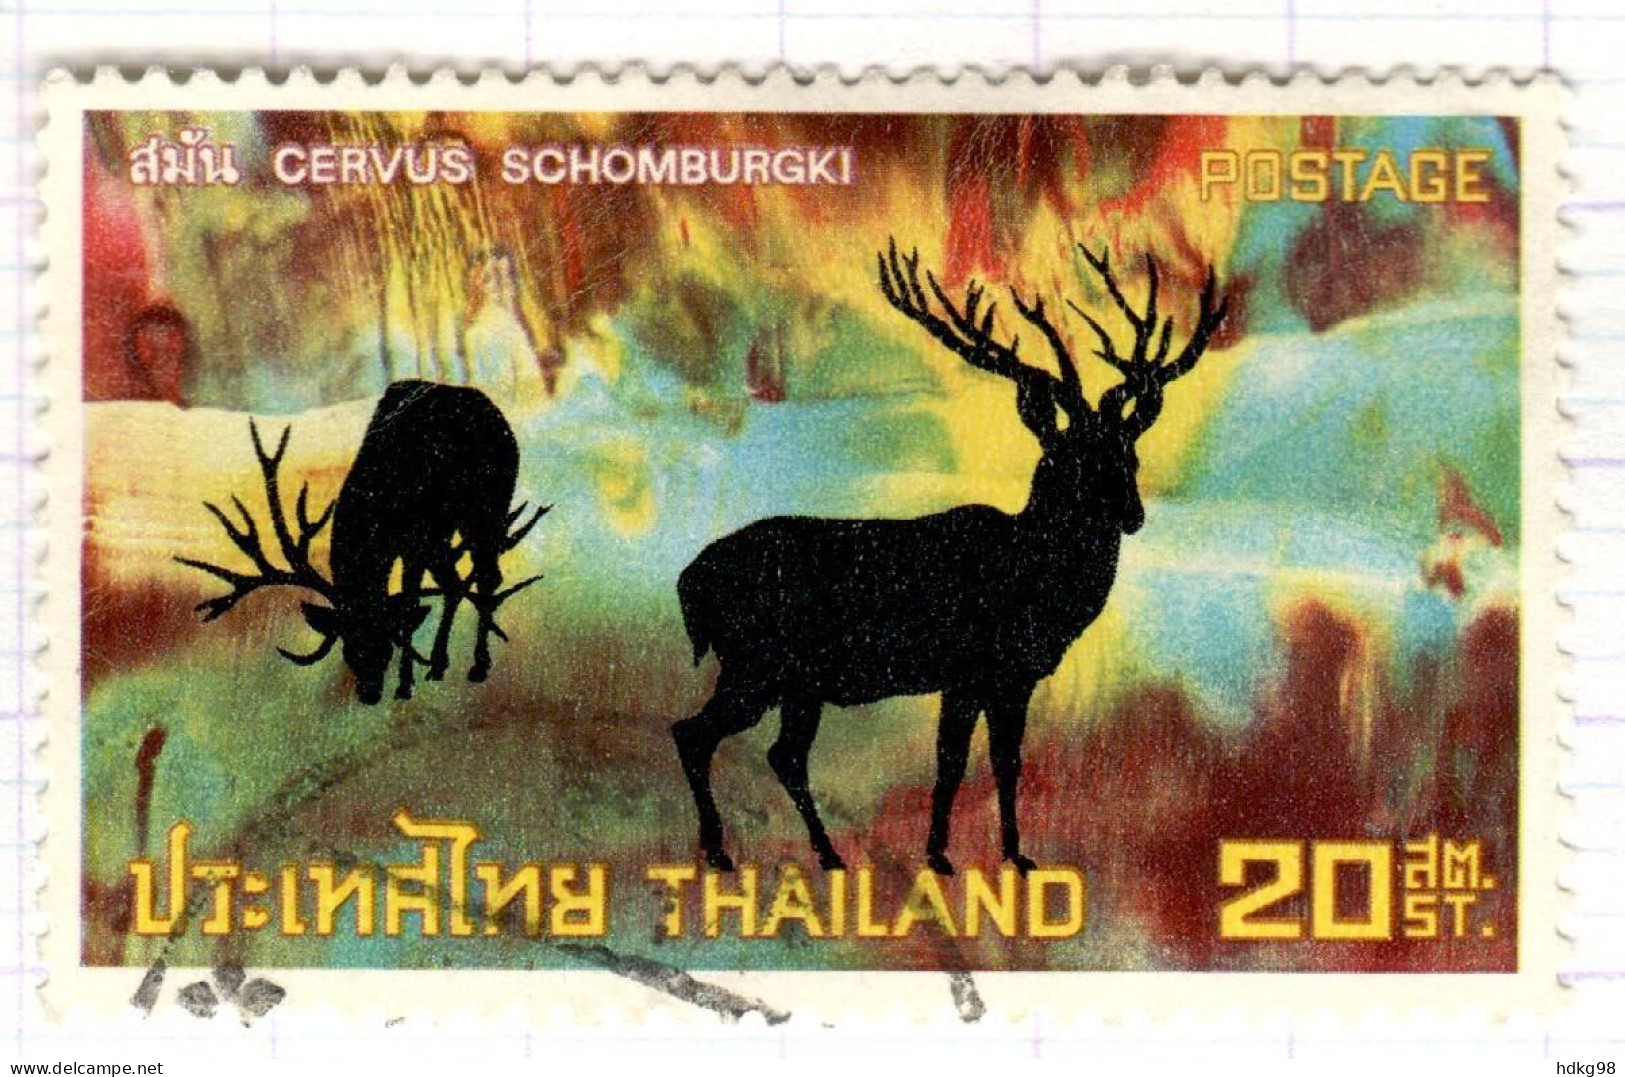 T+ Thailand 1973 Mi 698 Säugetiere - Tailandia